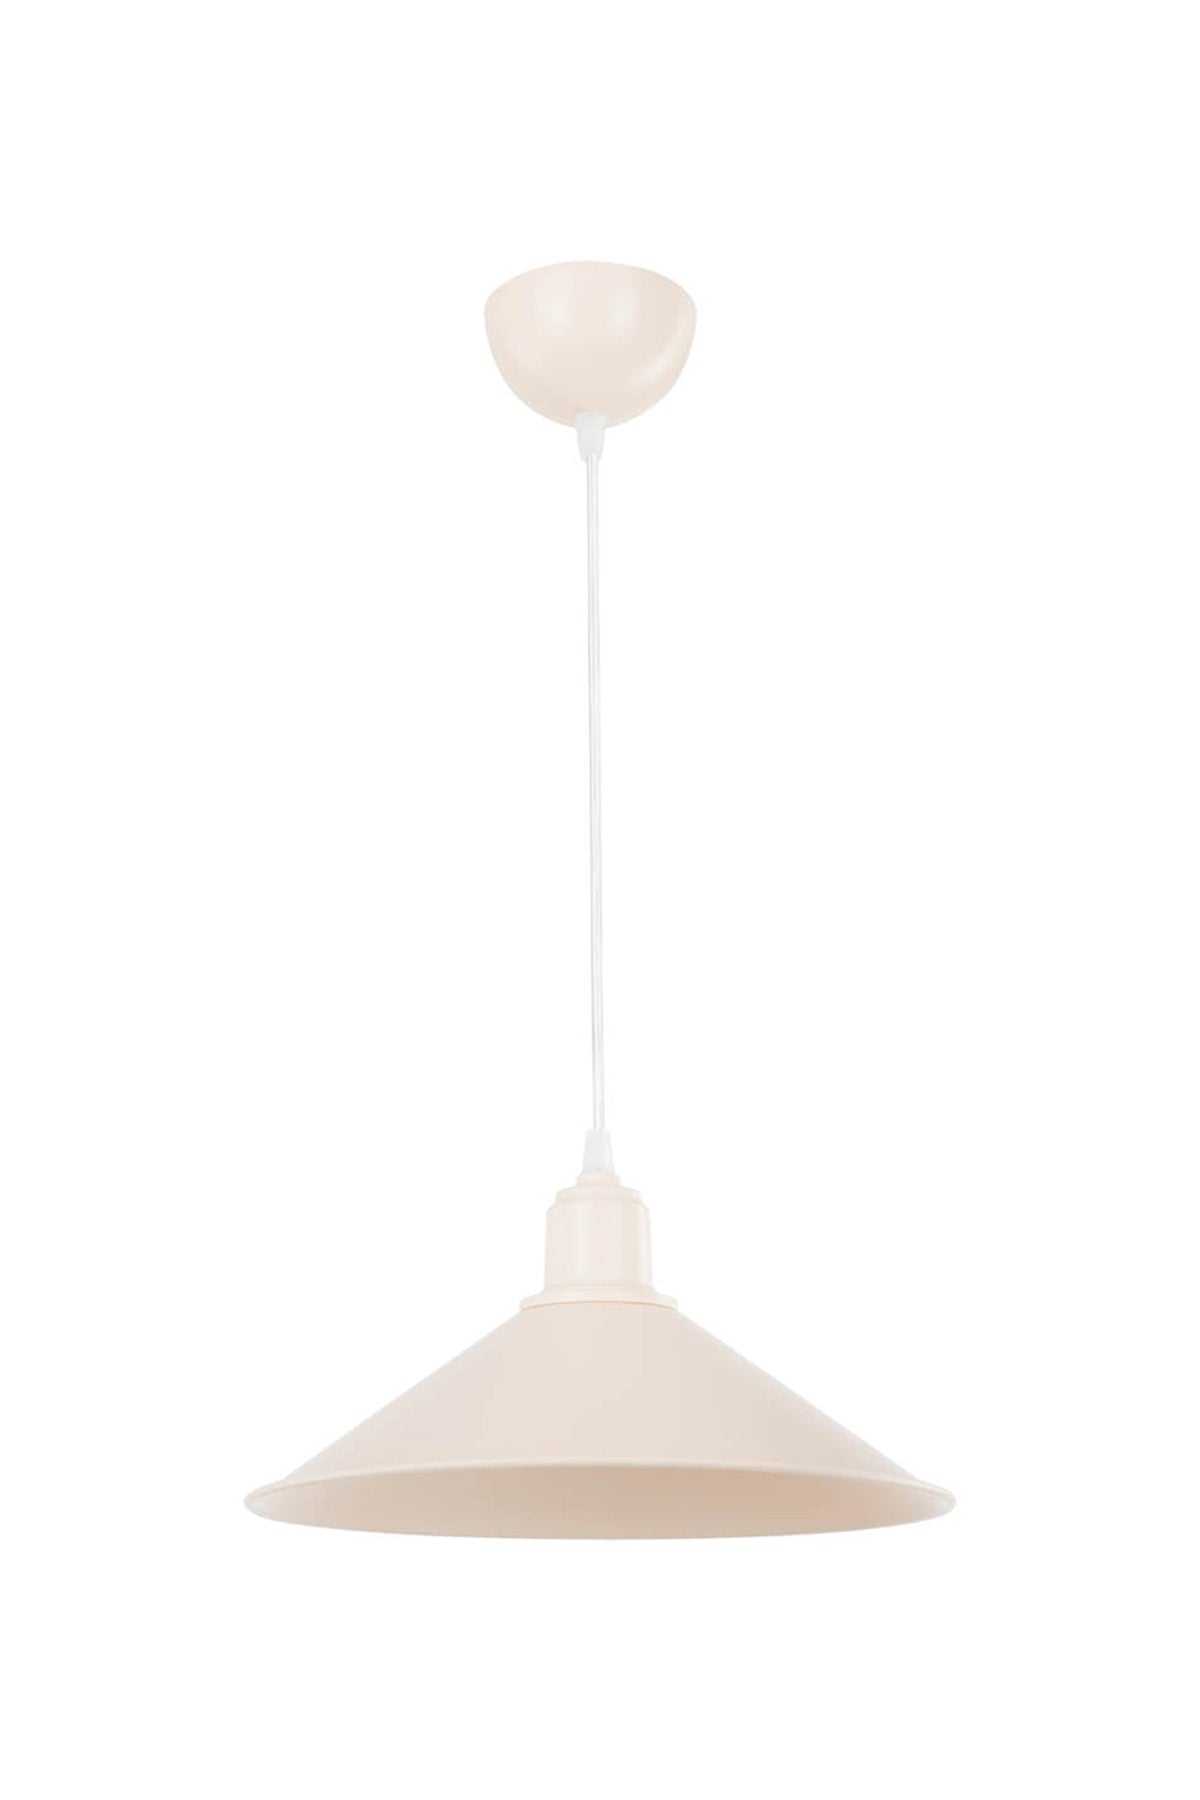 Cream Pendant Lamp Chandelier Living Room Kitchen Hallway Bedroom Lamp